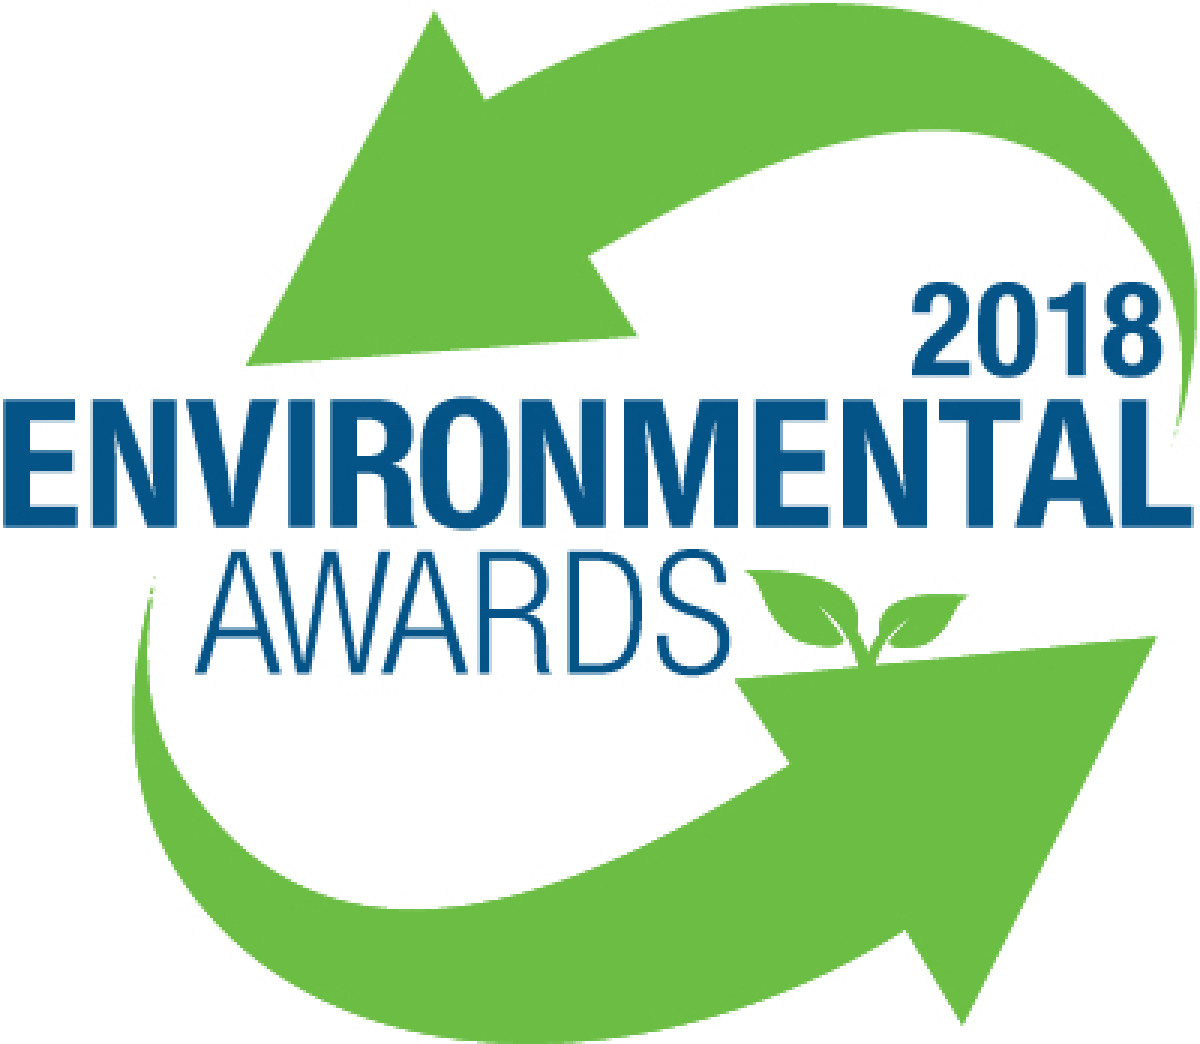 Εnvironmental Awards 2018: Βράβευση των καλύτερων πρακτικών για το περιβάλλον και την αειφορία.